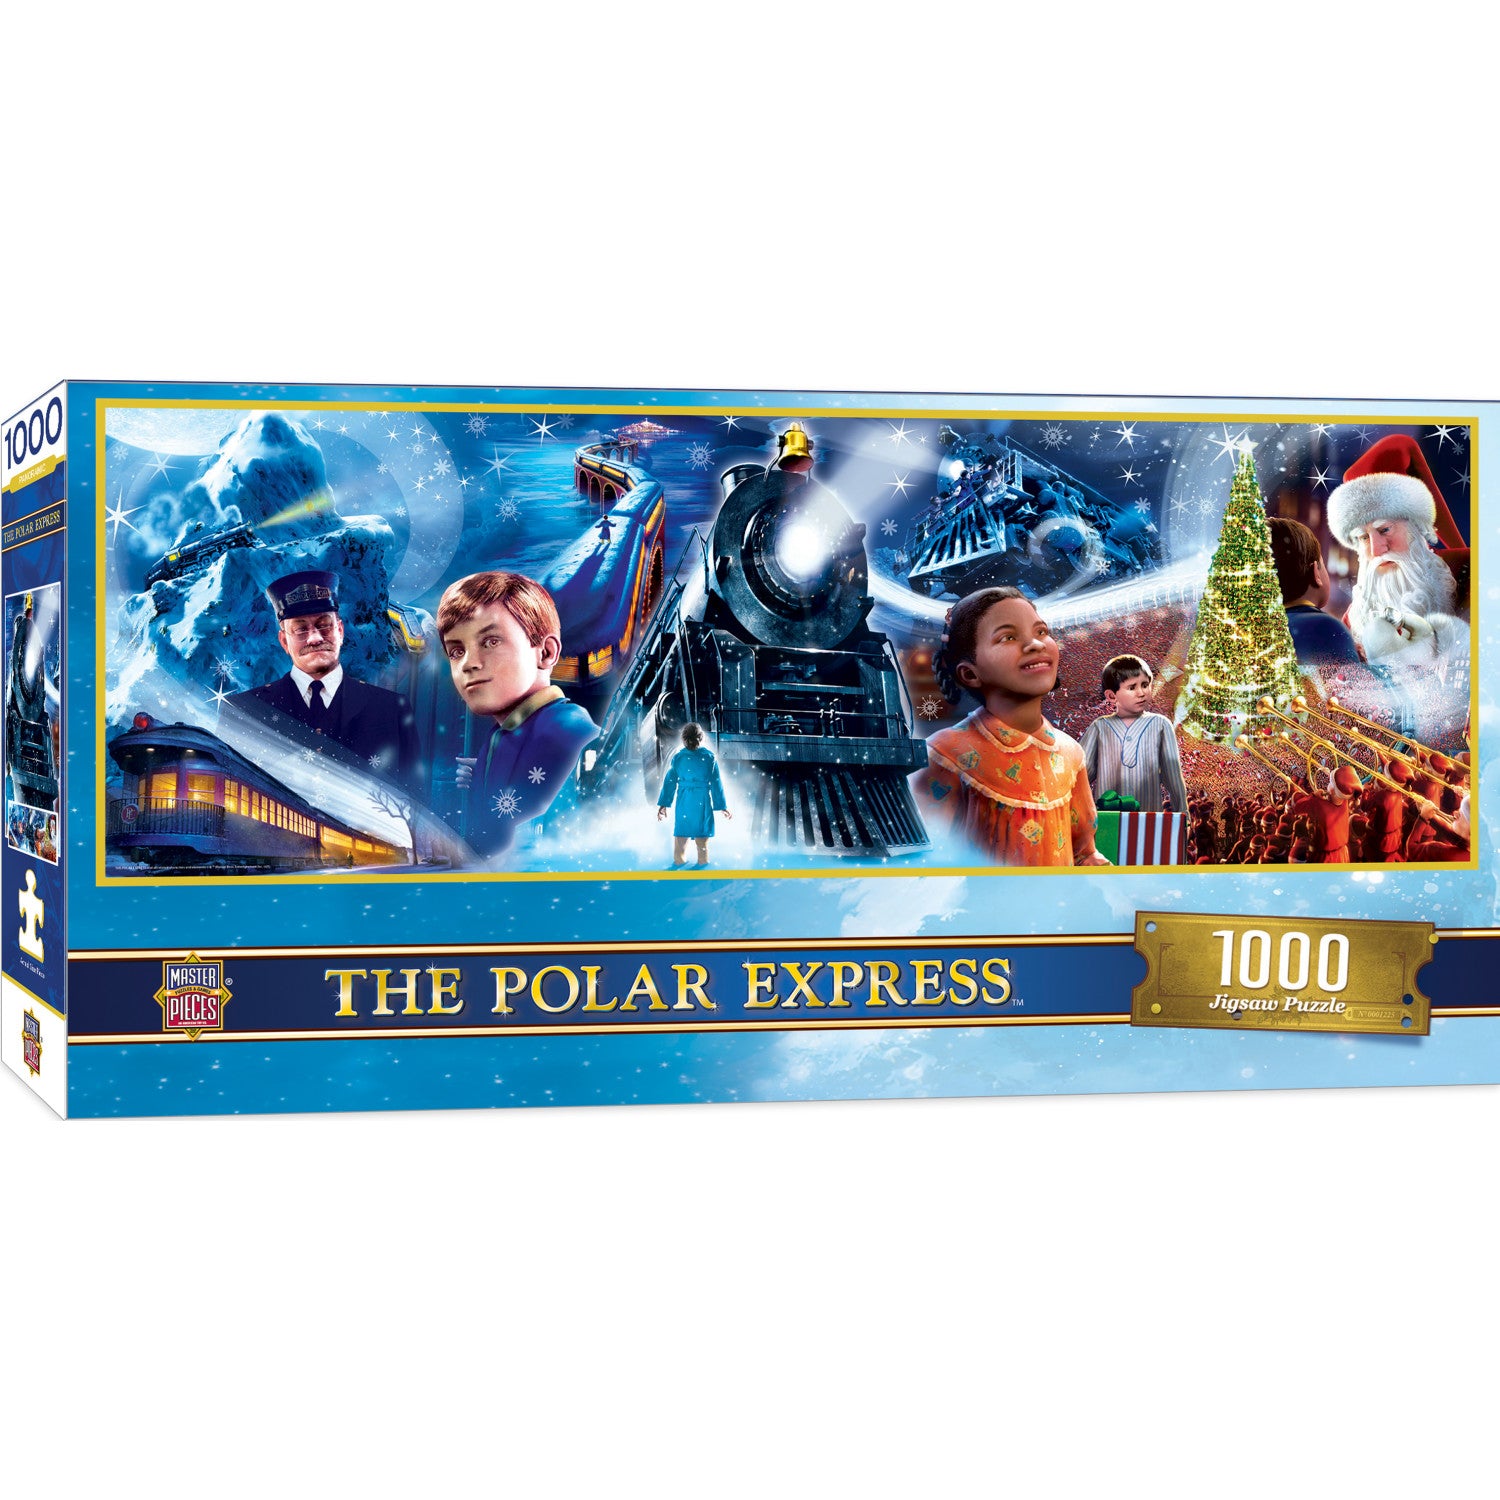 The Polar Express - 1000 Piece Panoramic Jigsaw Puzzle